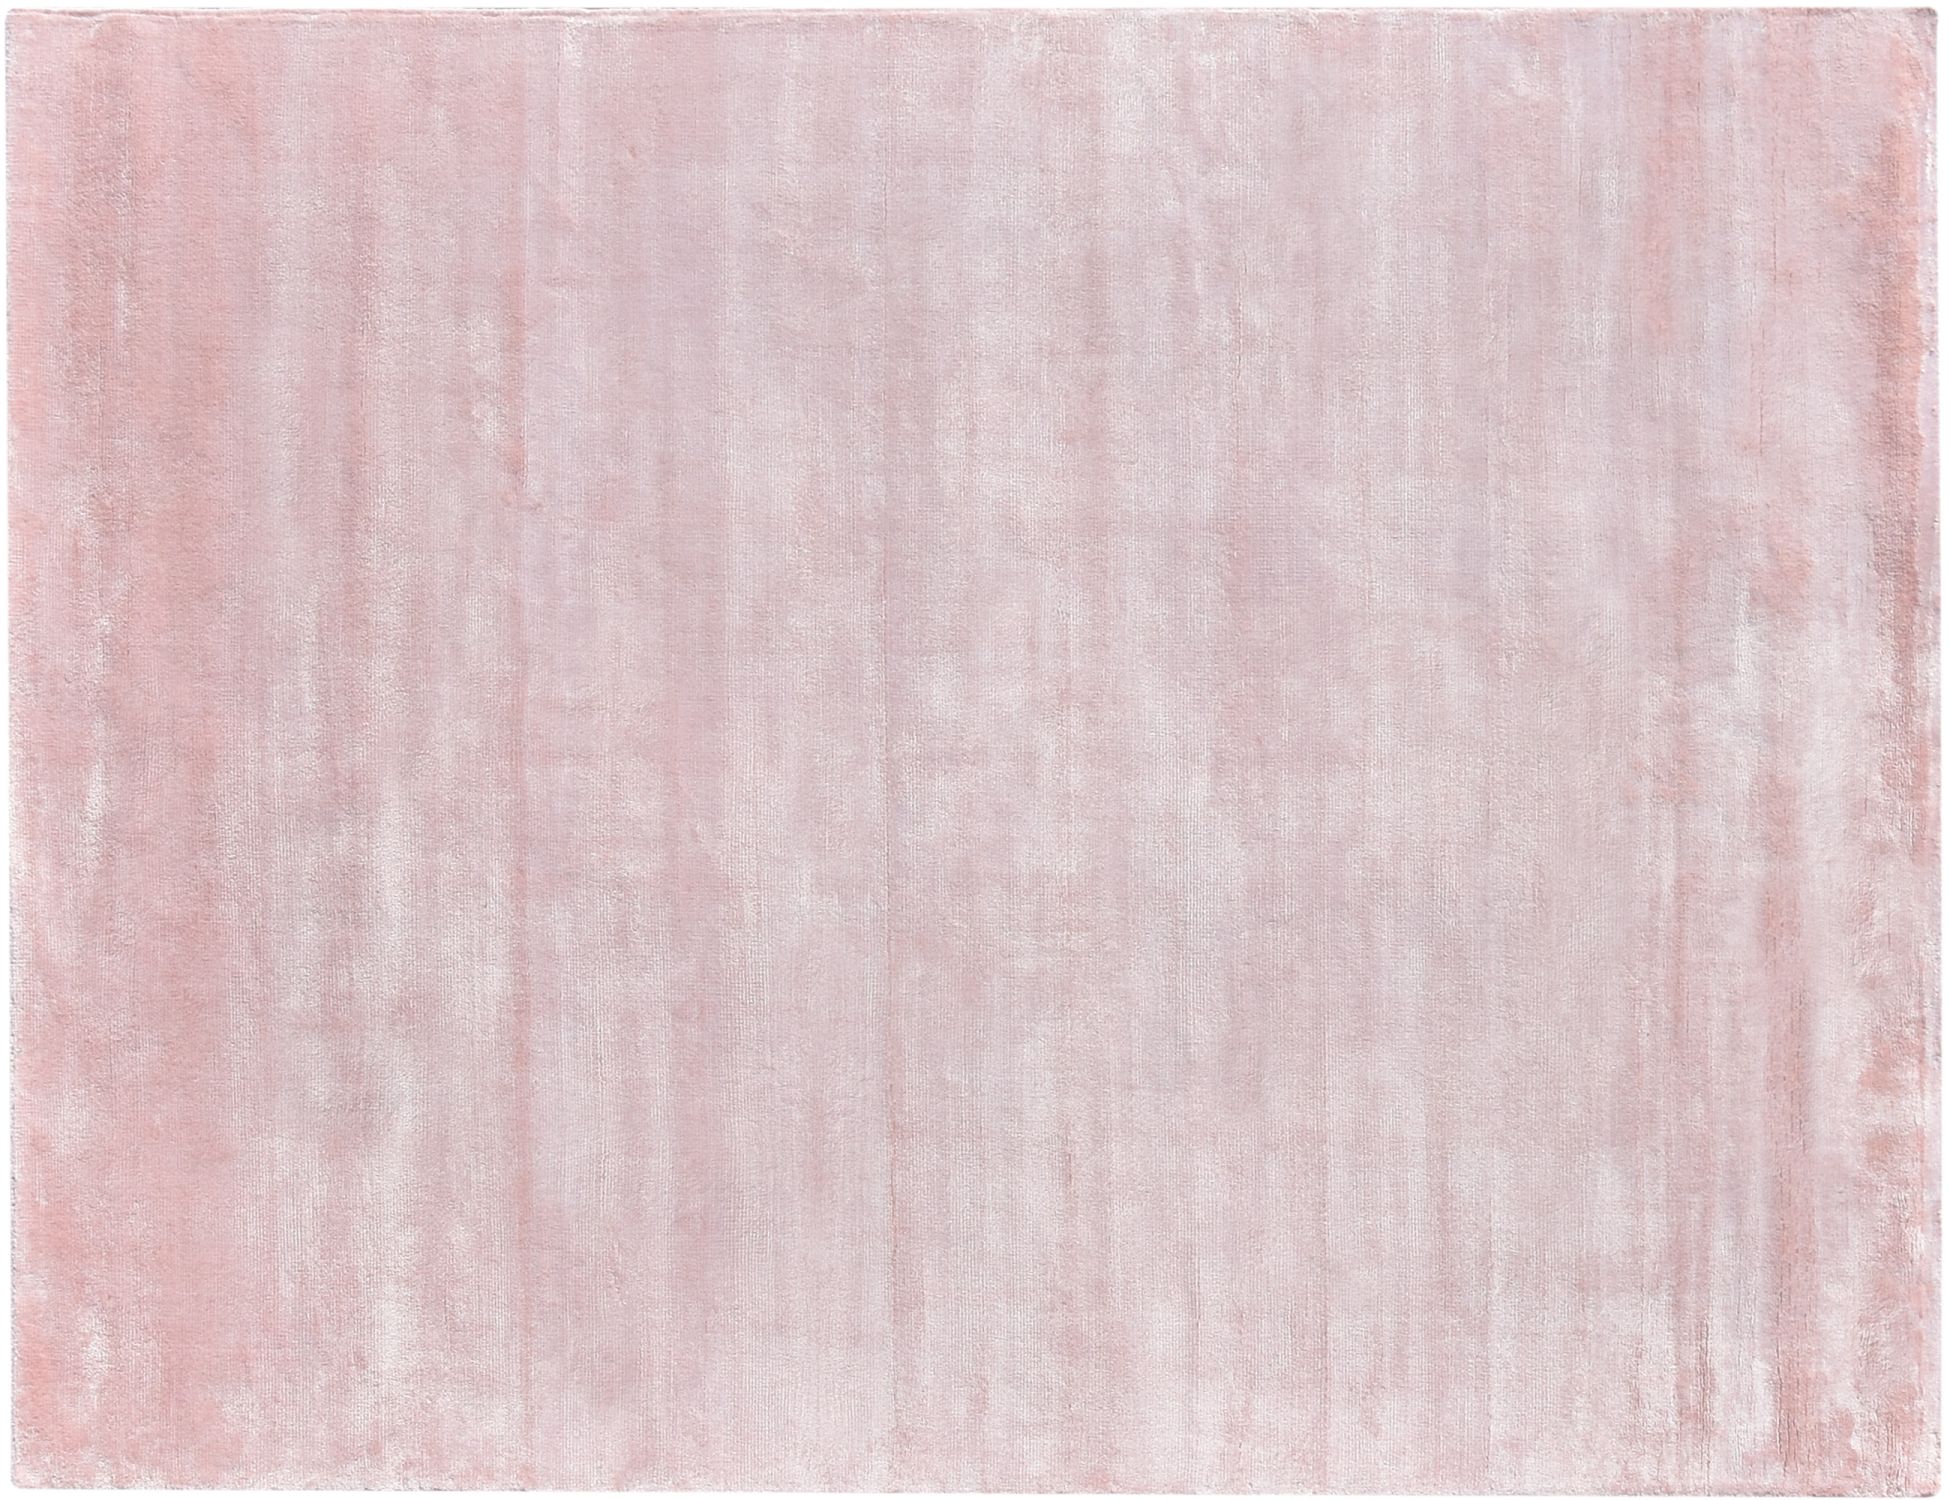 Cozy  Ροζ <br/>200 x 150 cm